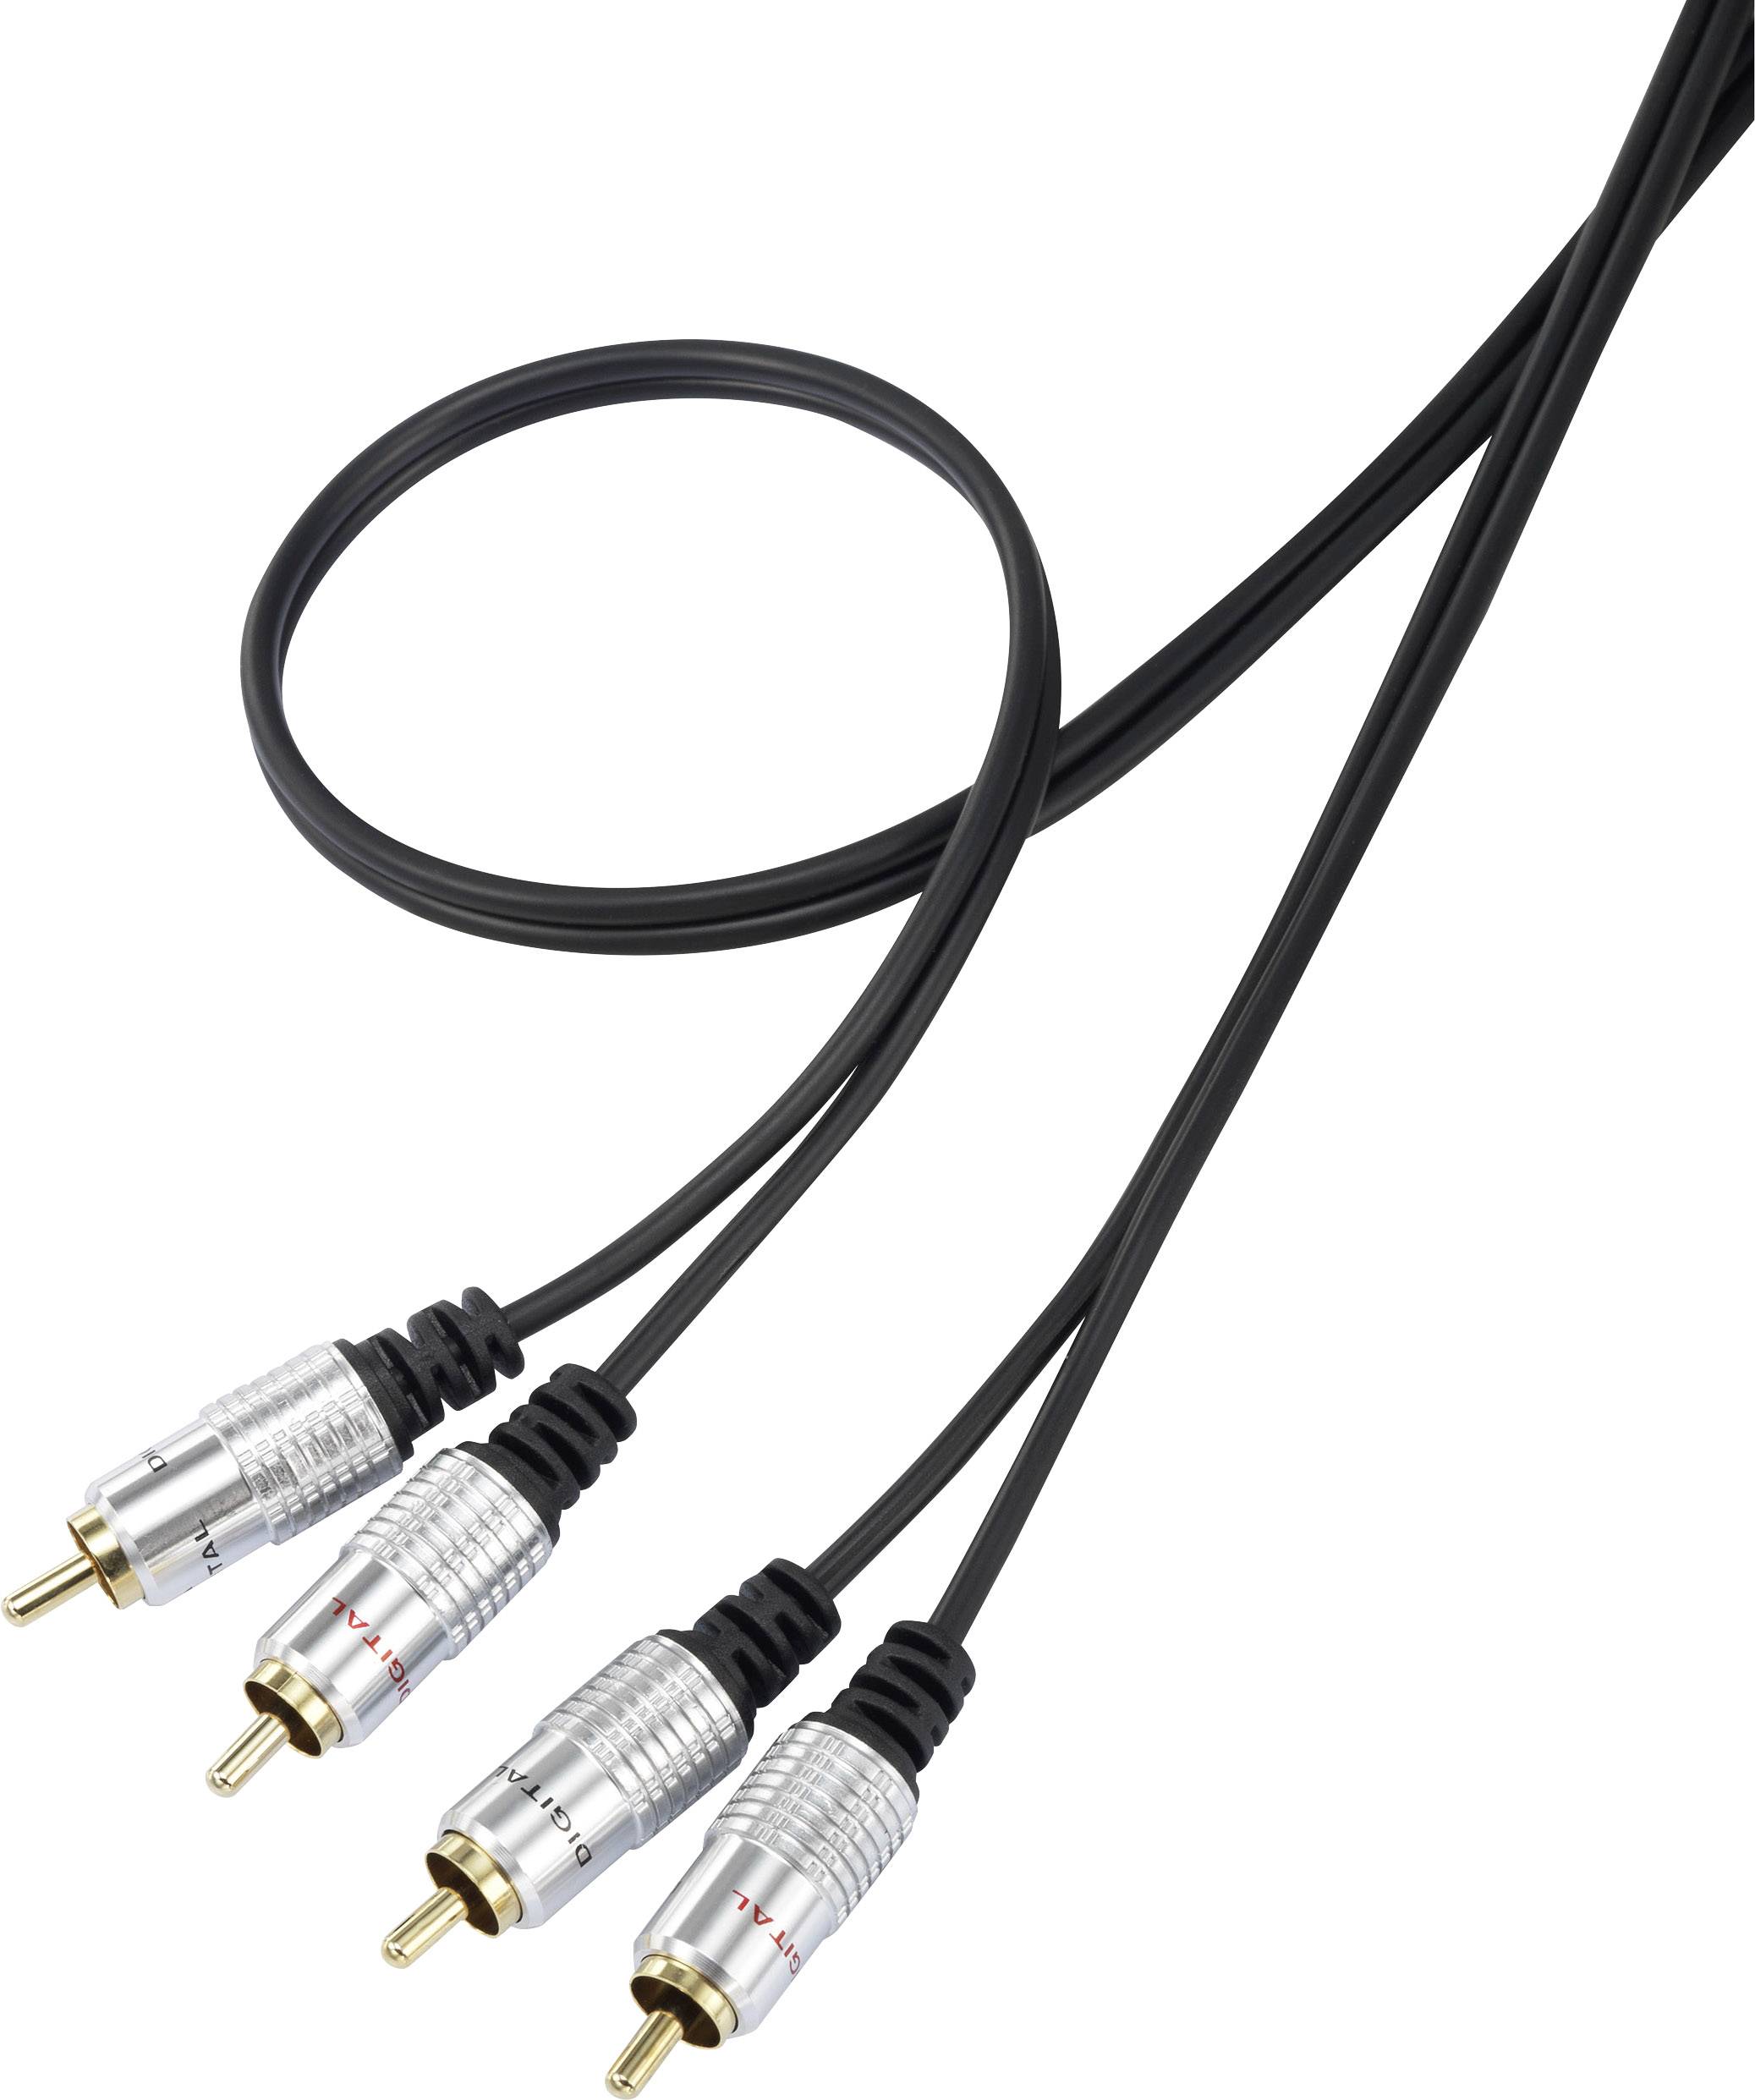 CONRAD SpeaKa Professional Cinch Audio Anschlusskabel [2x Cinch-Stecker - 2x Cinch-Stecker] 1.50 m S